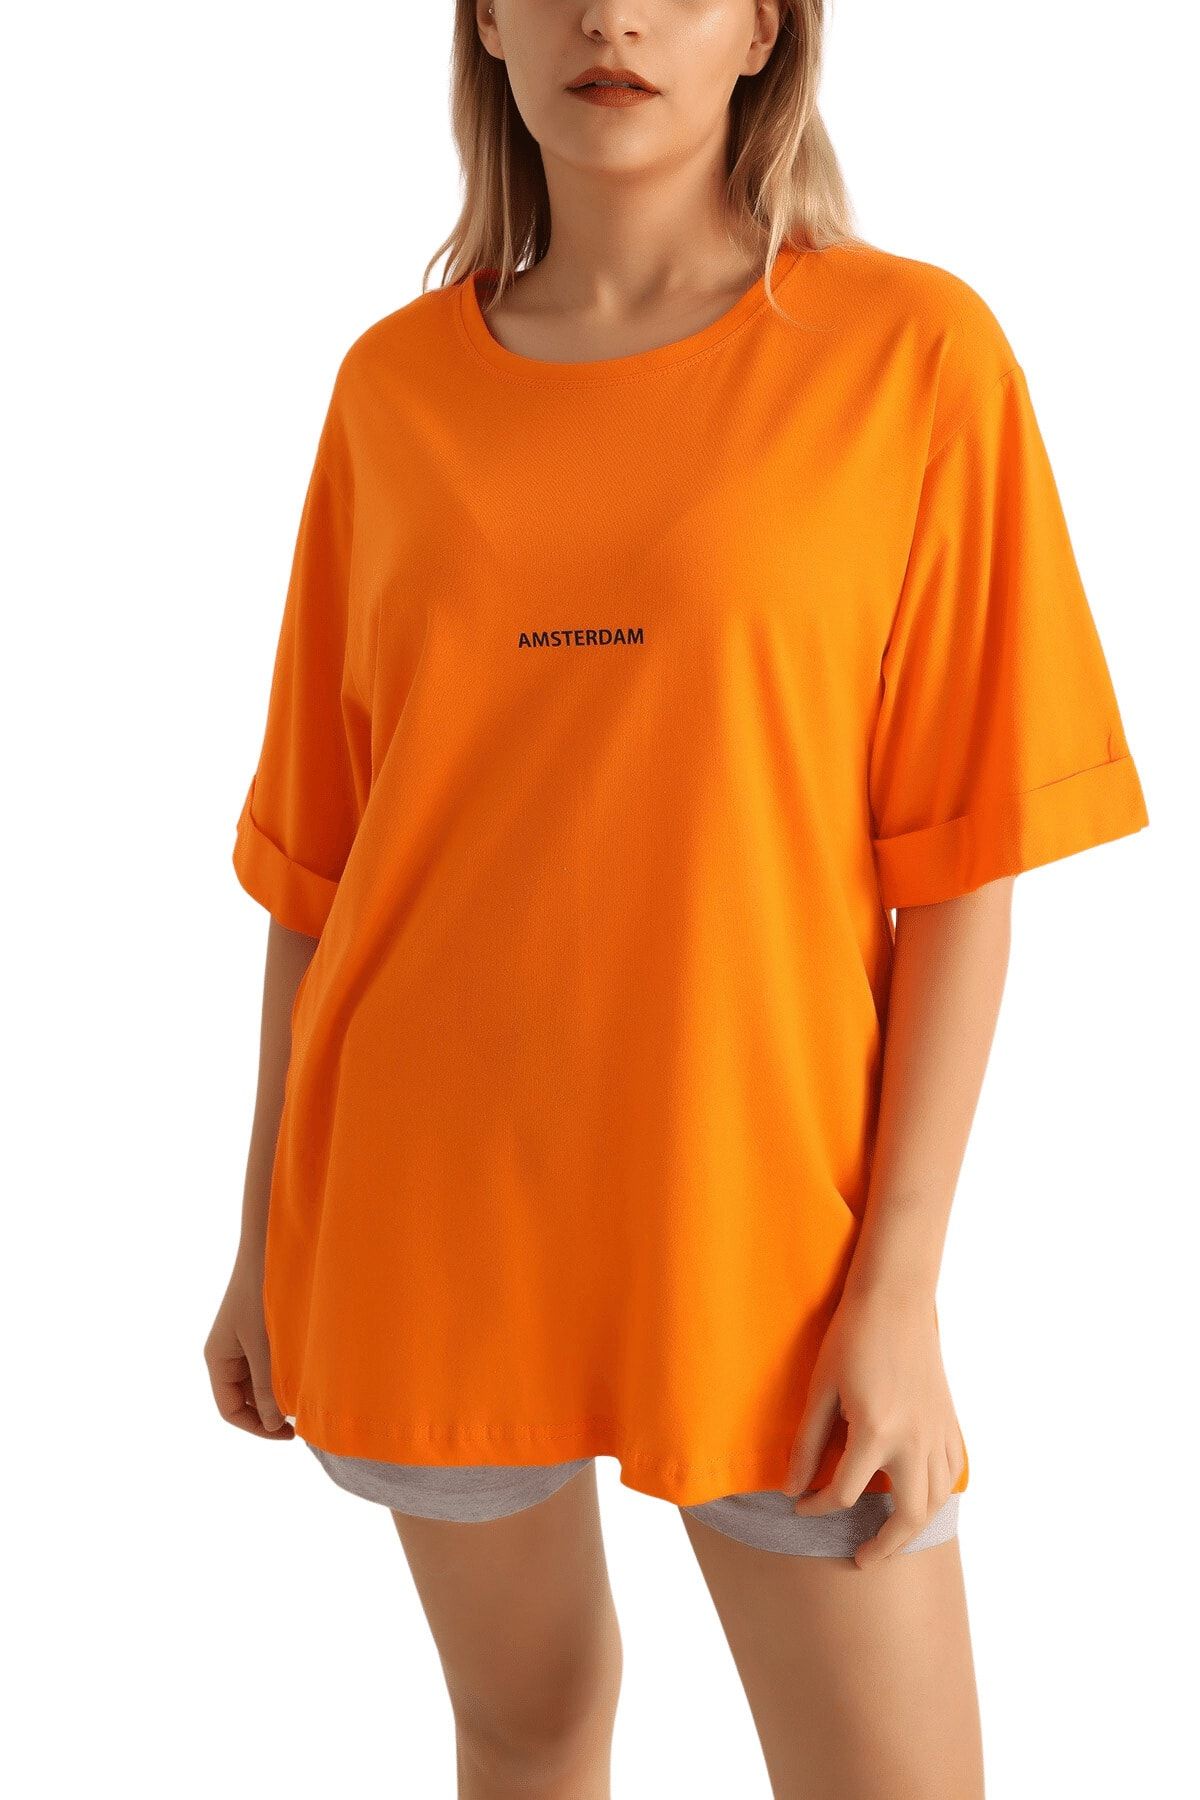 butikburuç Kadın Orange Amsterdam Baskılı Duble Kol Salaş Tişört